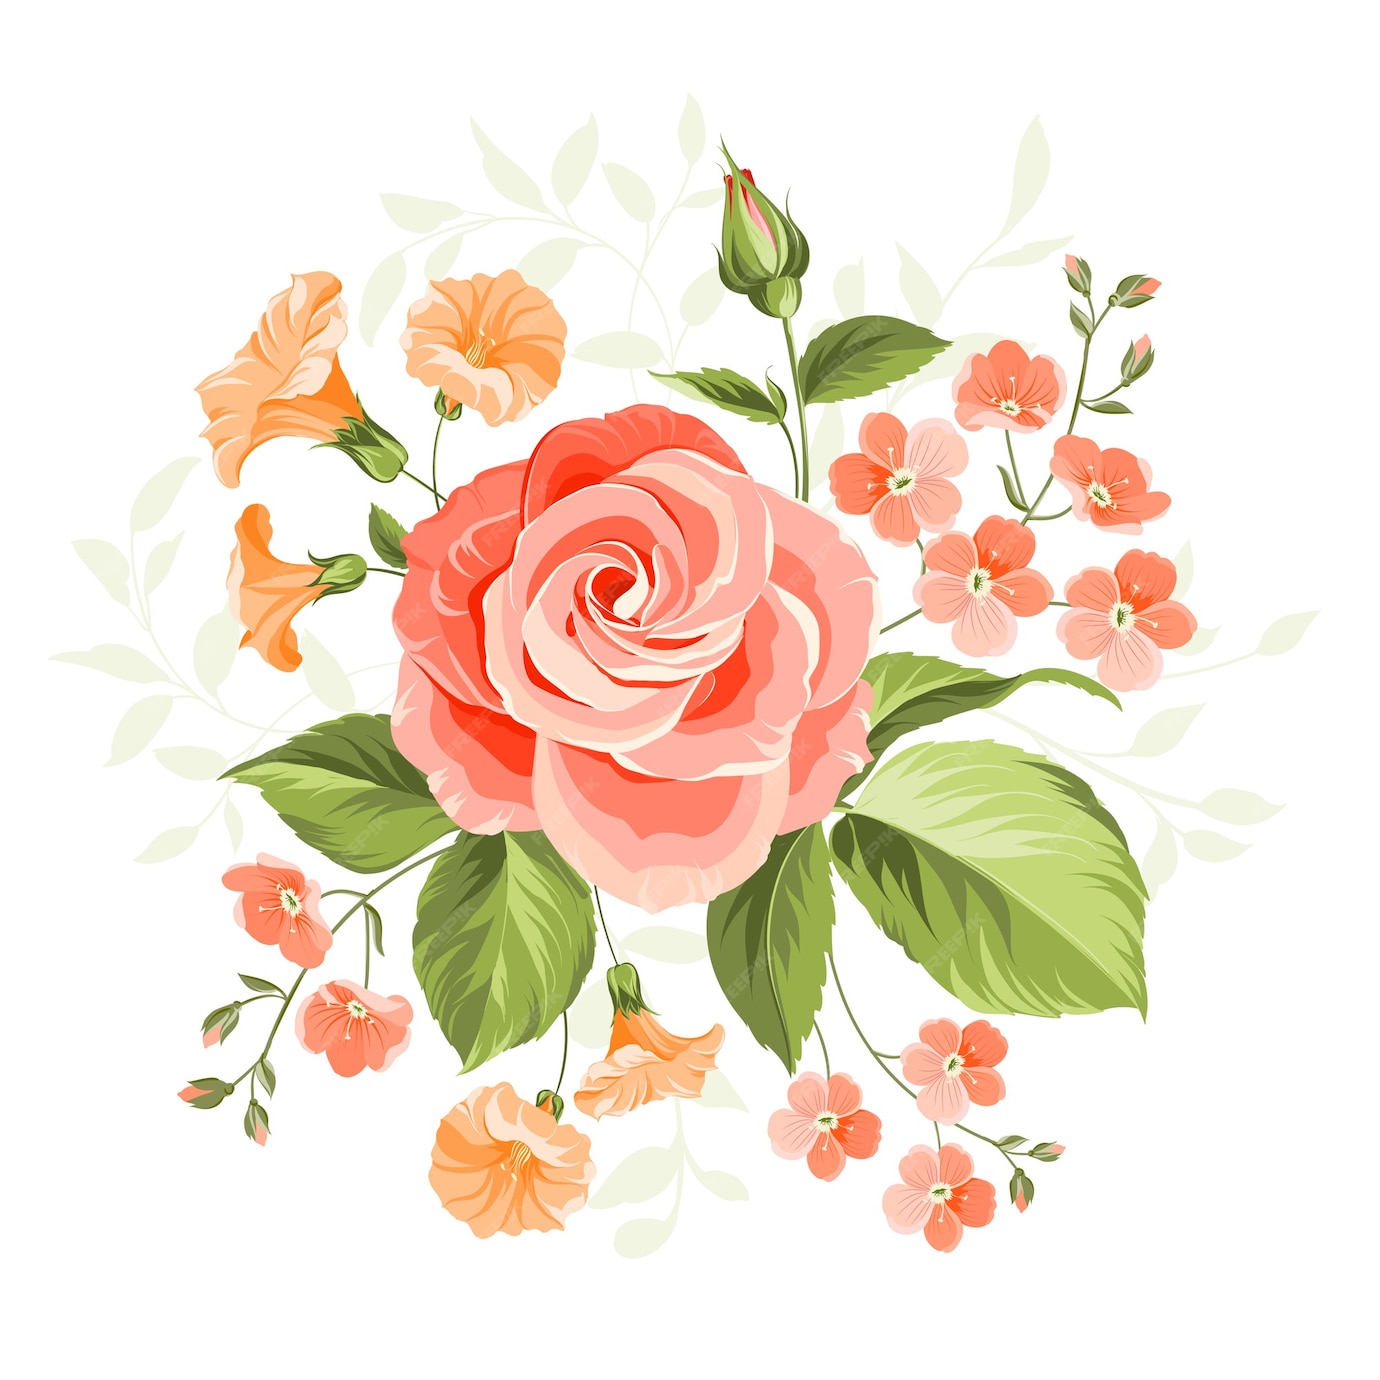 rose illustration free download